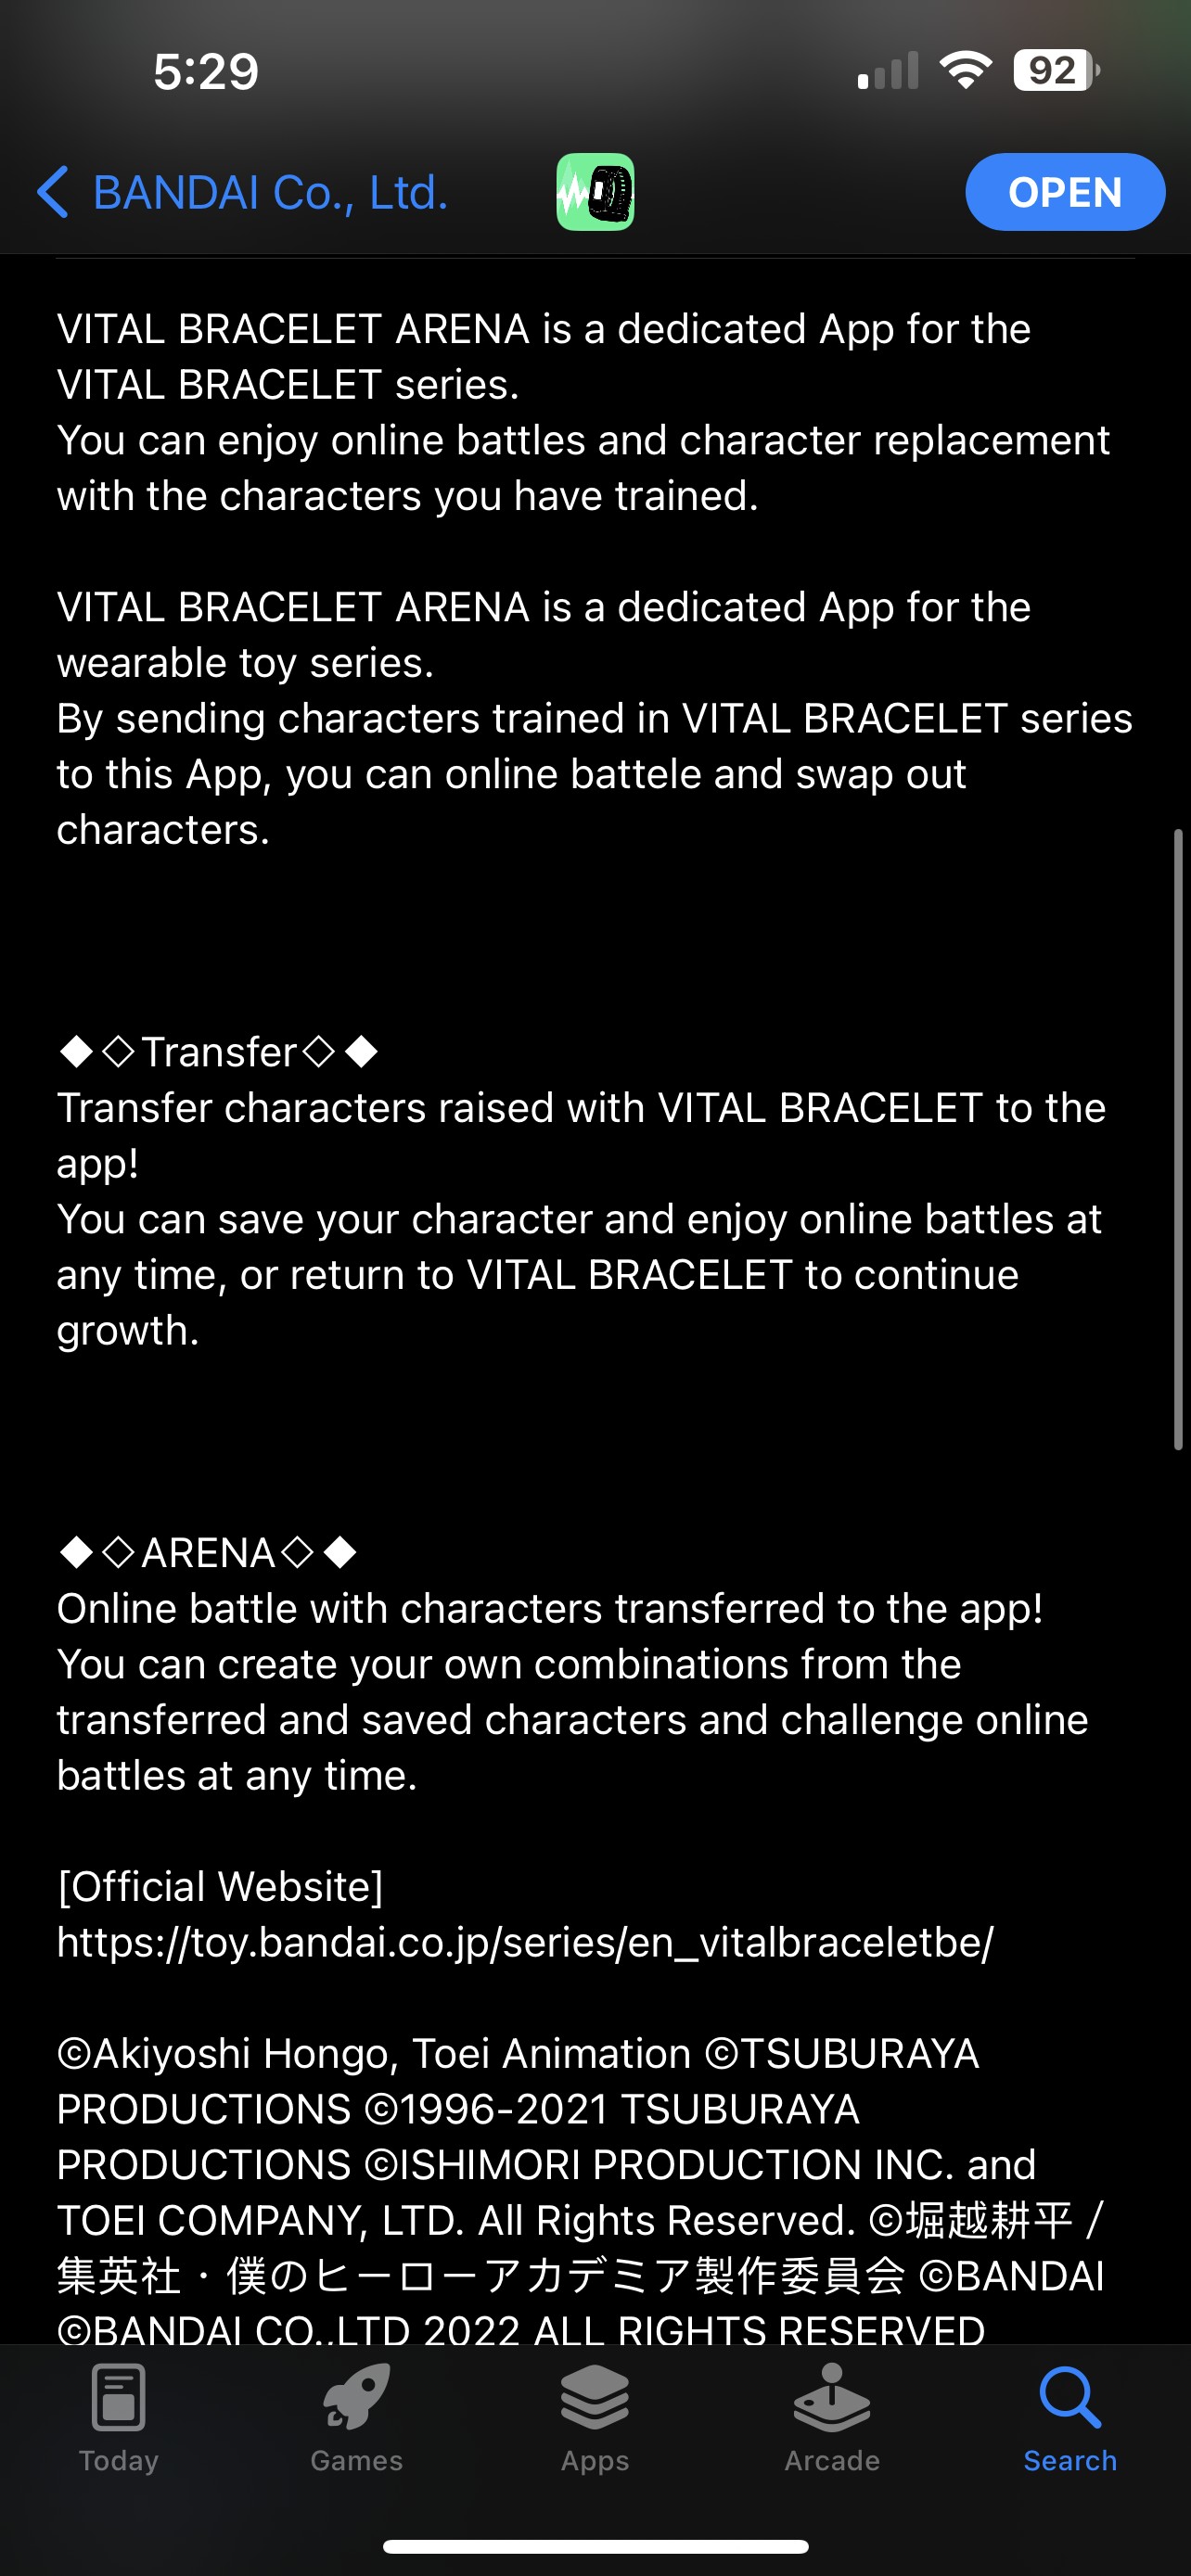 Vital Bracelet January Battle Event Announced for VB Arena App